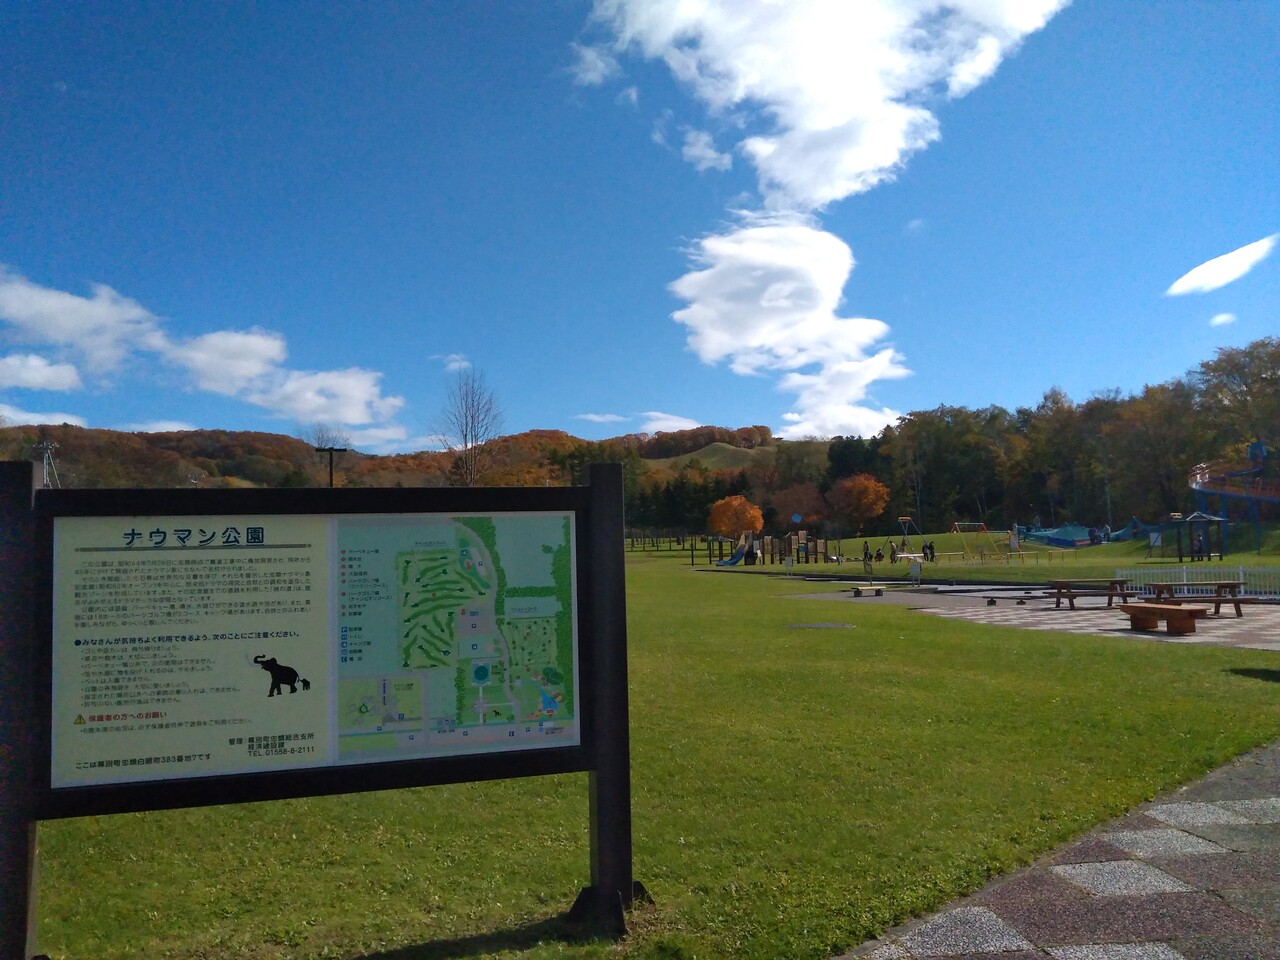 北海道の公園の家族におすすめの場所25選　19位:ナウマン公園